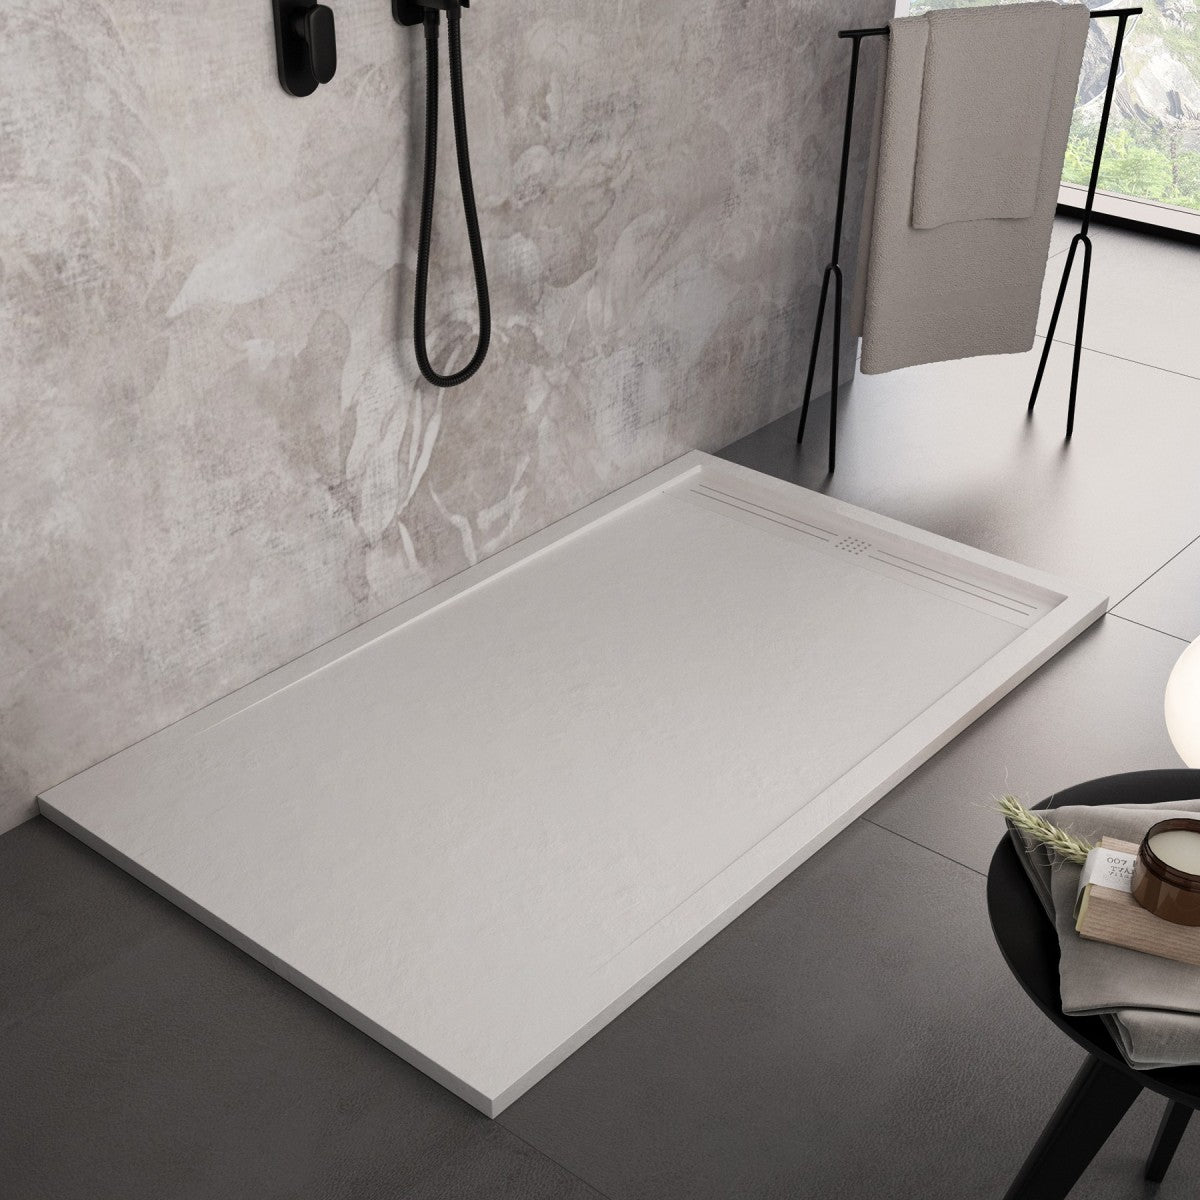 Piatto doccia in marmo resina bianco pietra cemento grid, misura 90x160